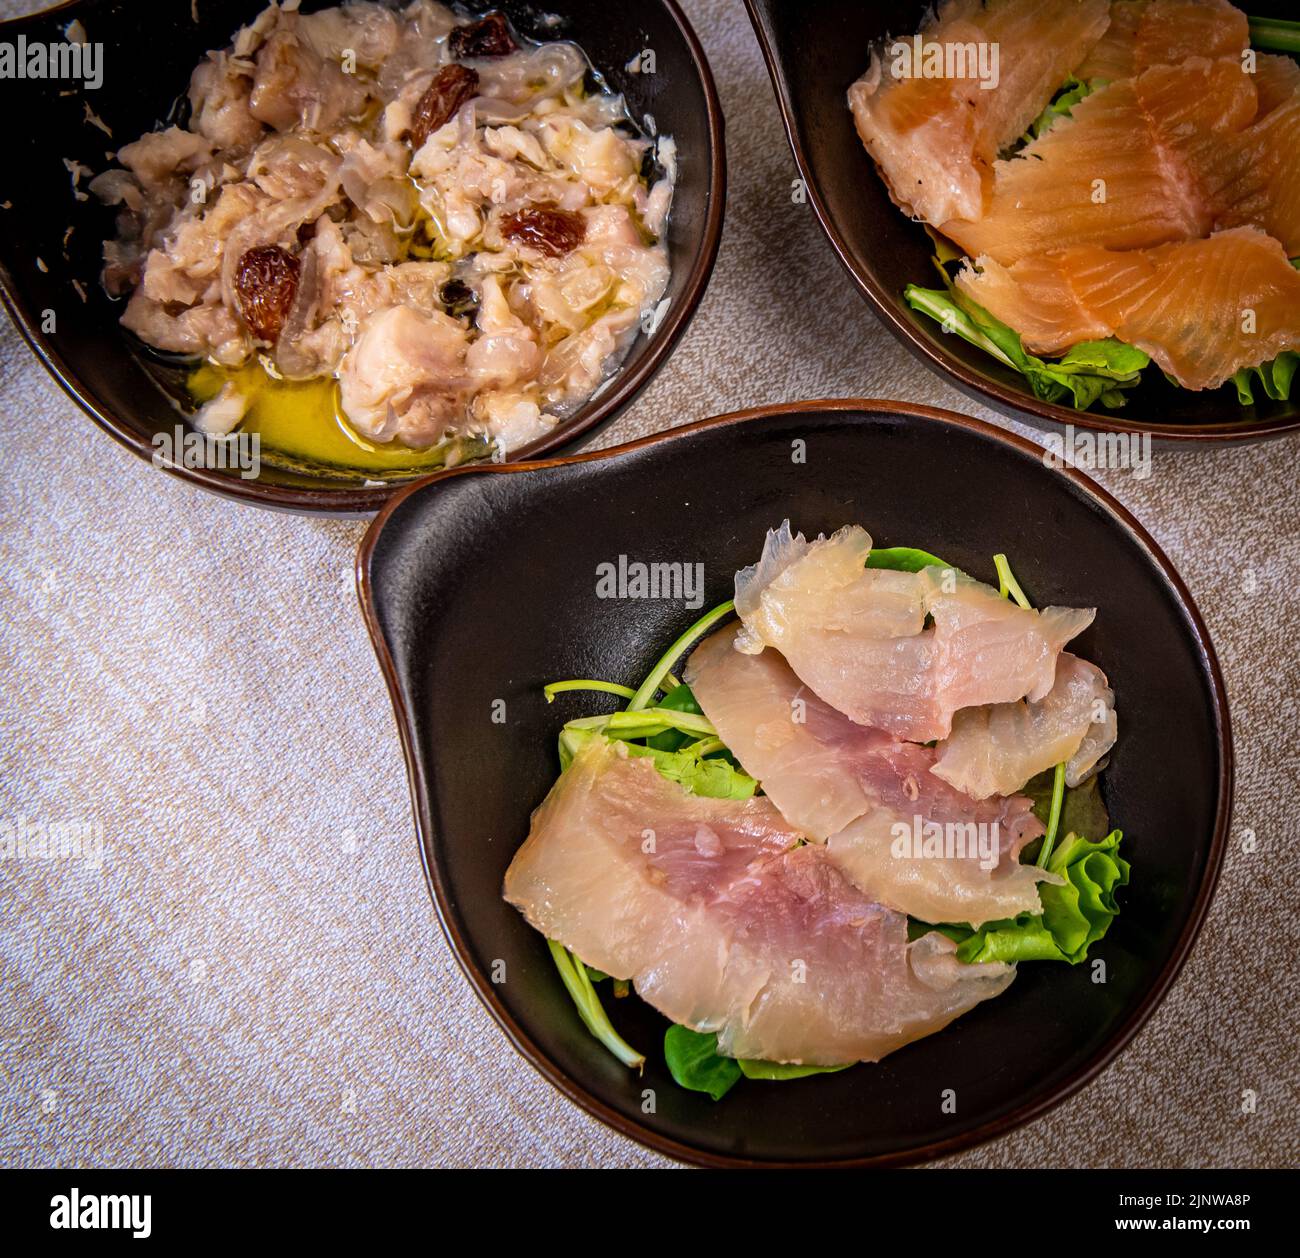 Hors-d'œuvre de poisson cru : sarde en saor, omble de lac frais et saumon frais - plat typiquement vénitien Banque D'Images